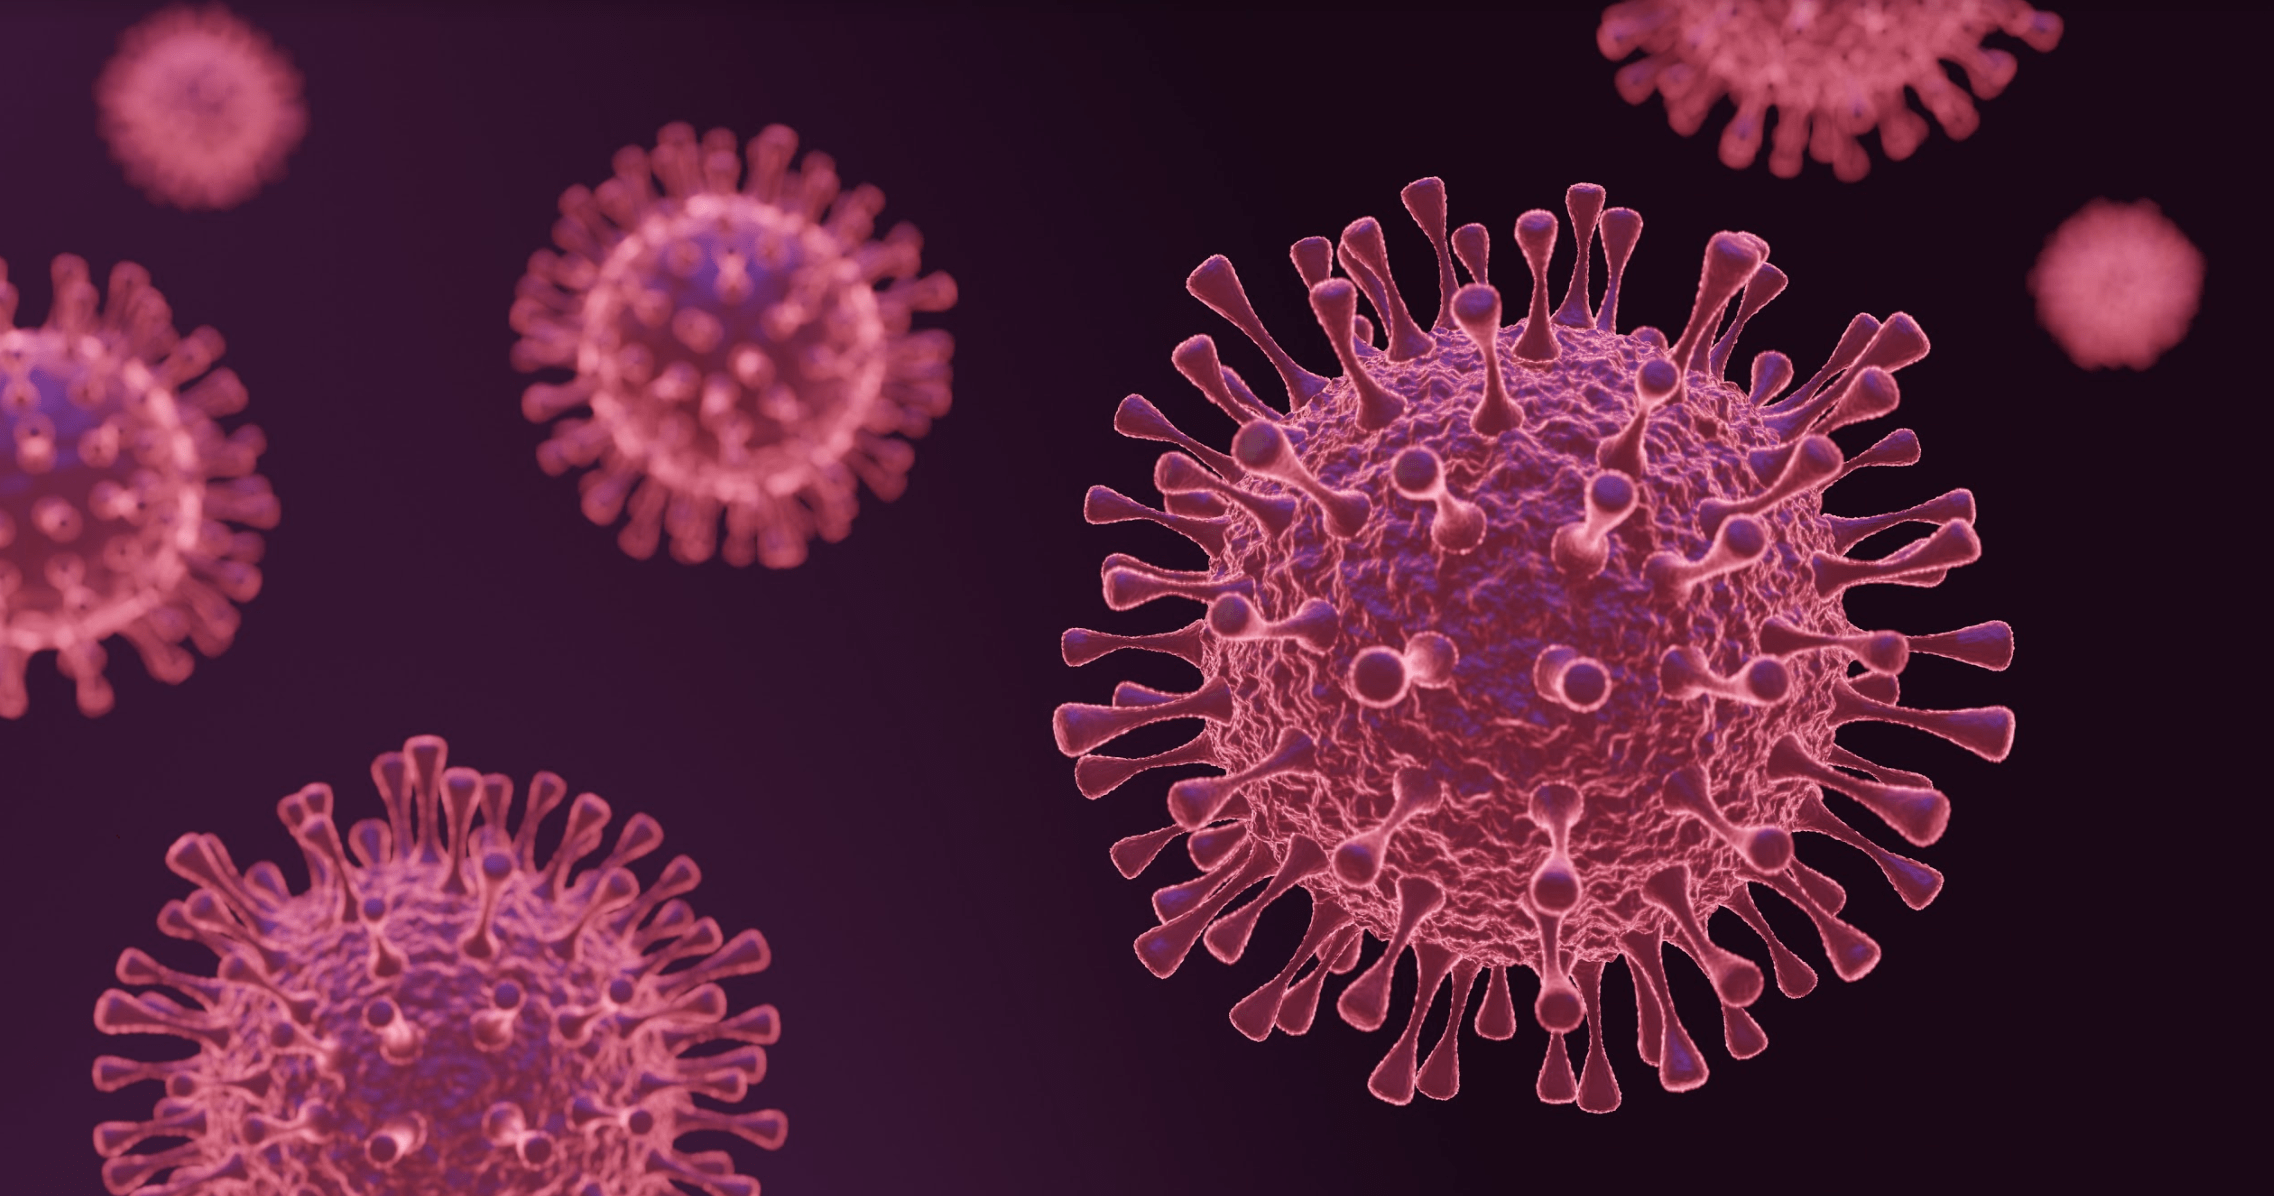 The Fight Against Viruses